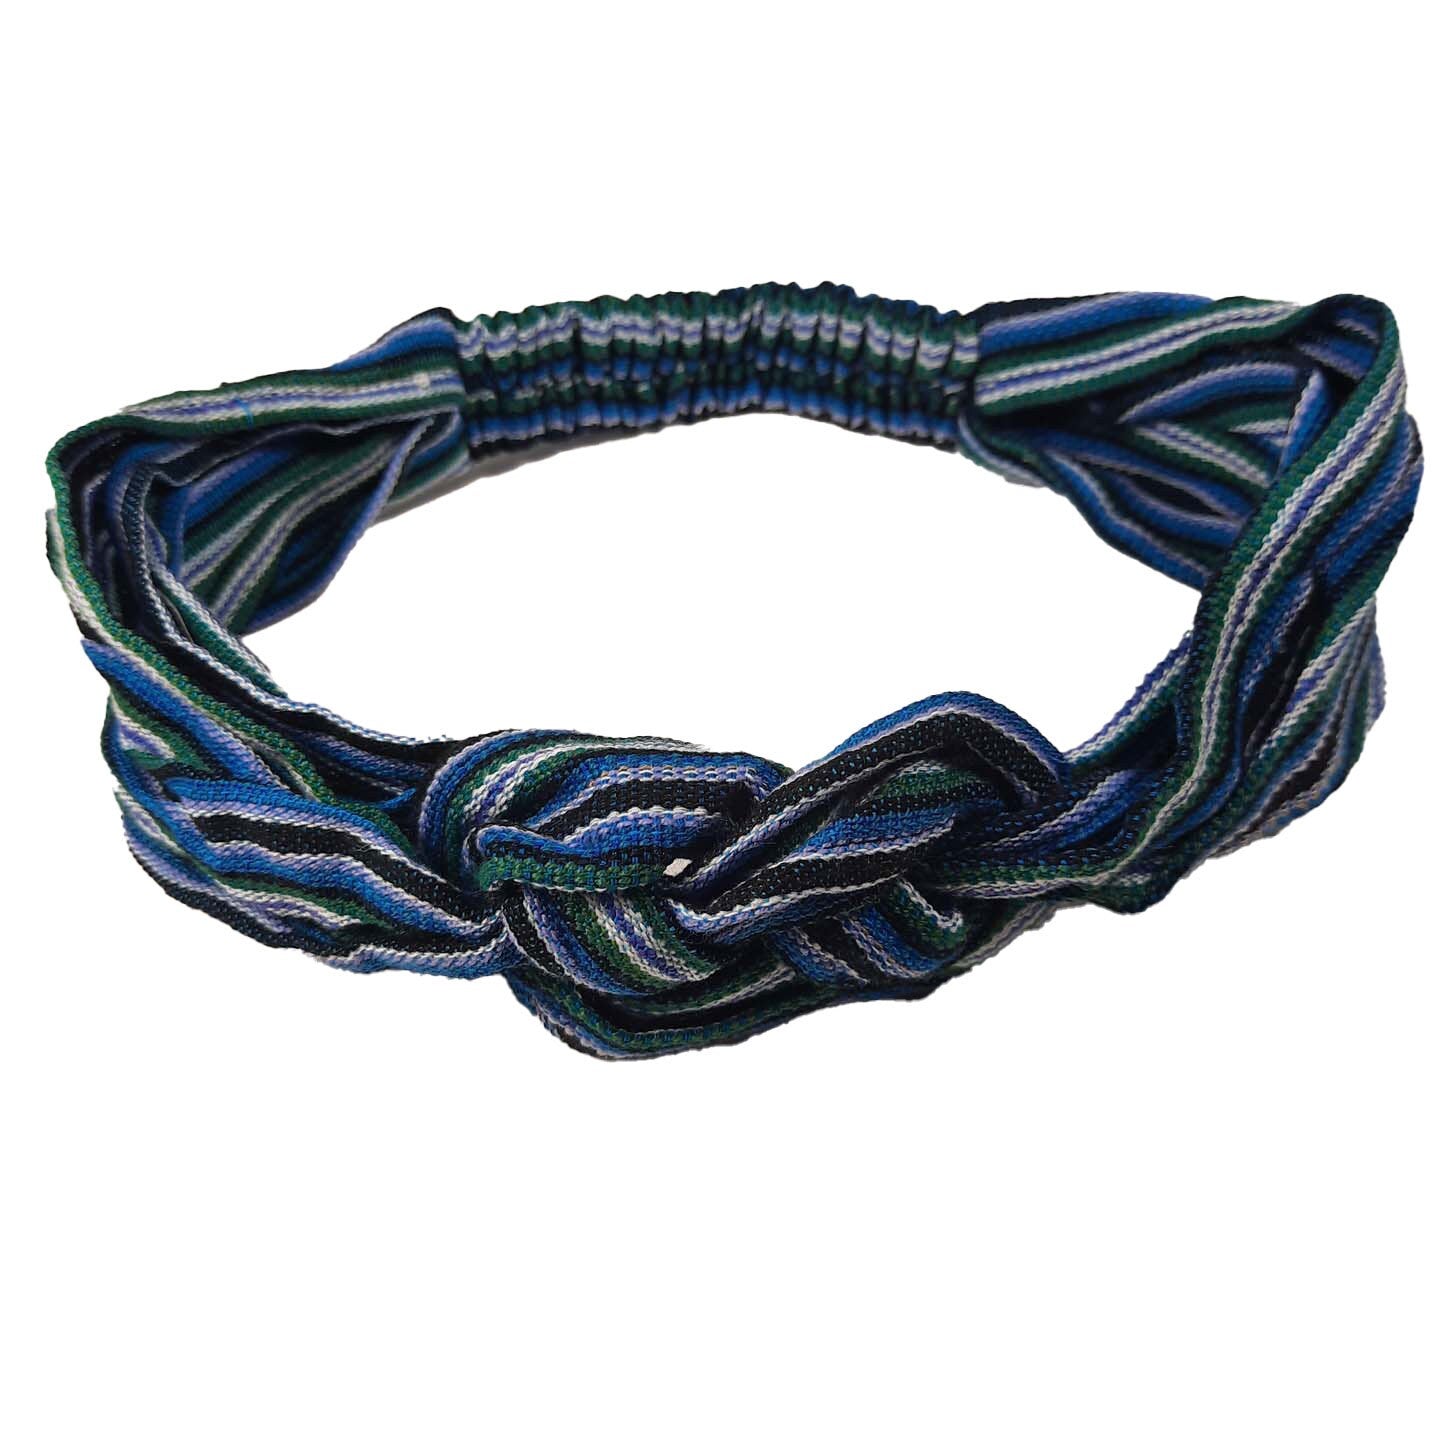 Braided Headband | Turquoise Teal